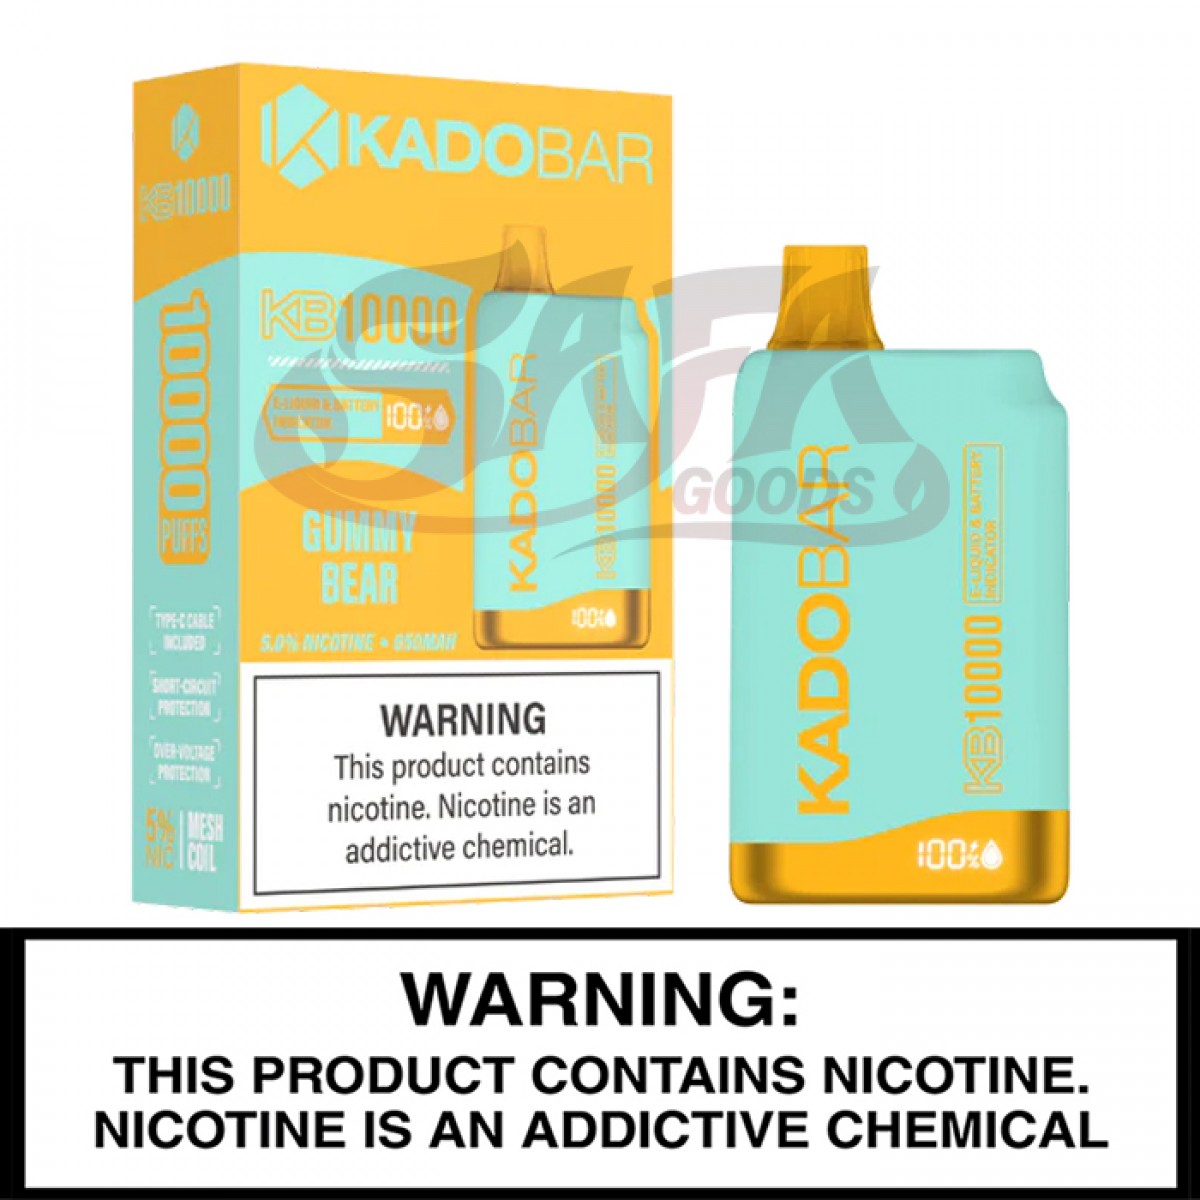 Kado Bar 10,000 Puff Disposable Vapes [5PC]